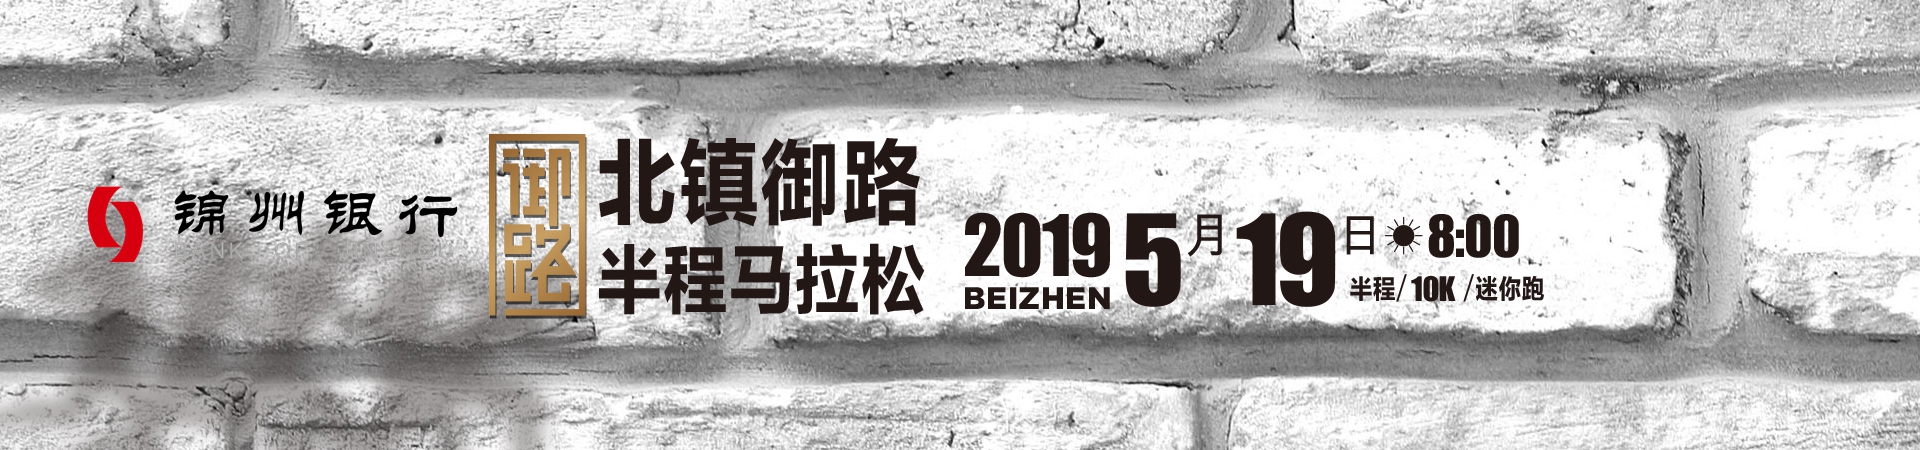 2019锦州·北镇“锦州银行杯” 北镇御路半程马拉松